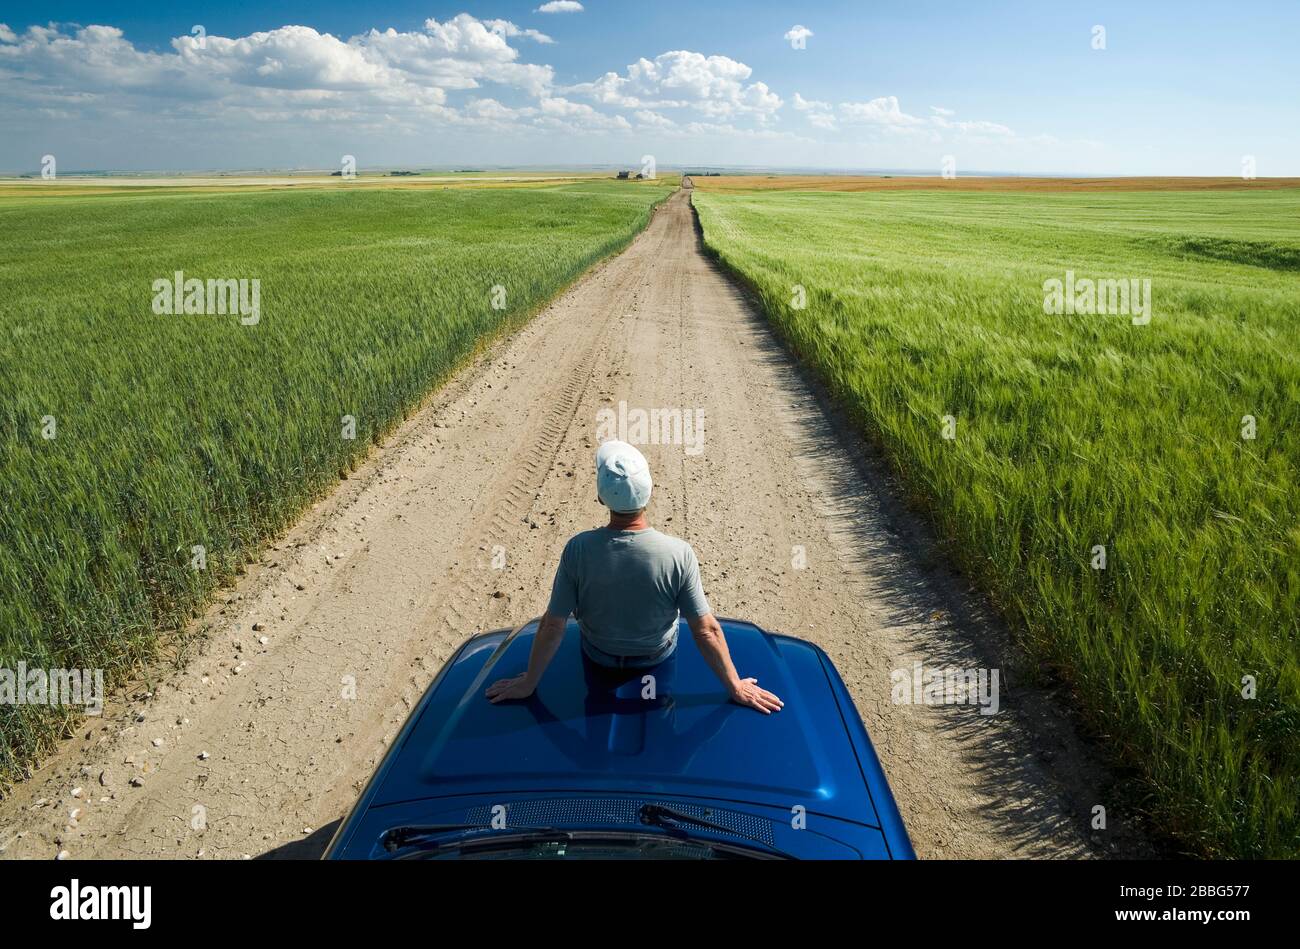 Un homme est assis sur un camion agricole qui regarde sur une route de gravier avec des champs de blé dur et d'orge sur le côté, près de Ponteix, Saskatchewan, Canada Banque D'Images